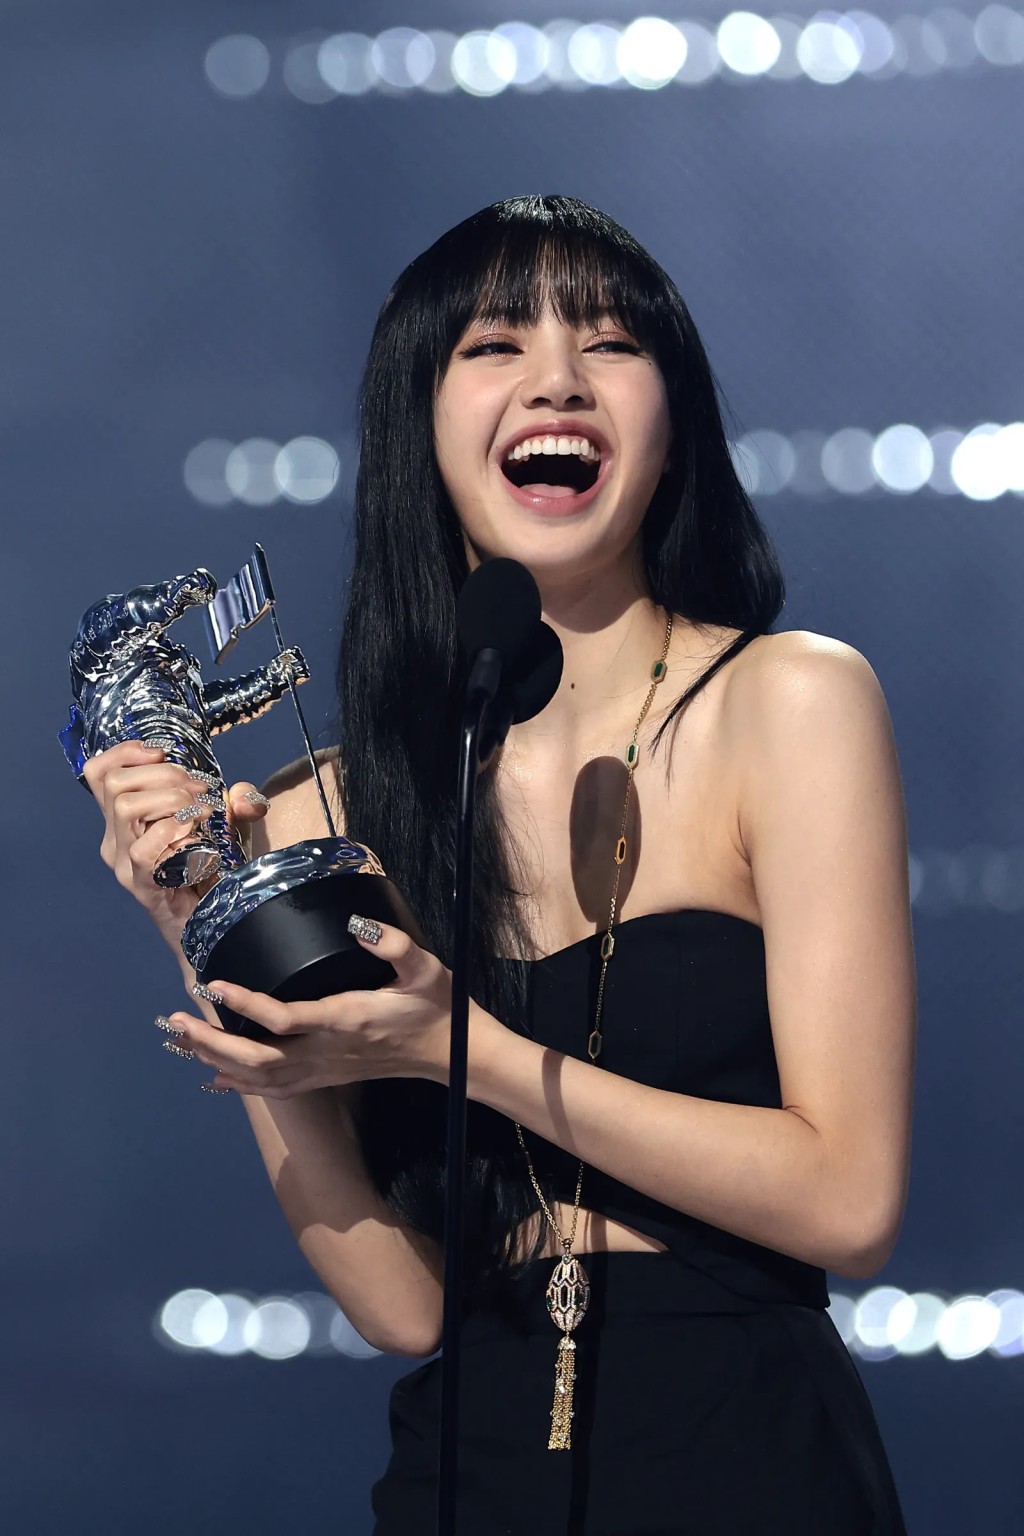 成员之一的 Lisa 以 solo 歌曲《Lalisa》夺下「Best K-POP」奖项，成为 VMA 历史上首位夺下这个奖项的 K-POP solo 女歌手。